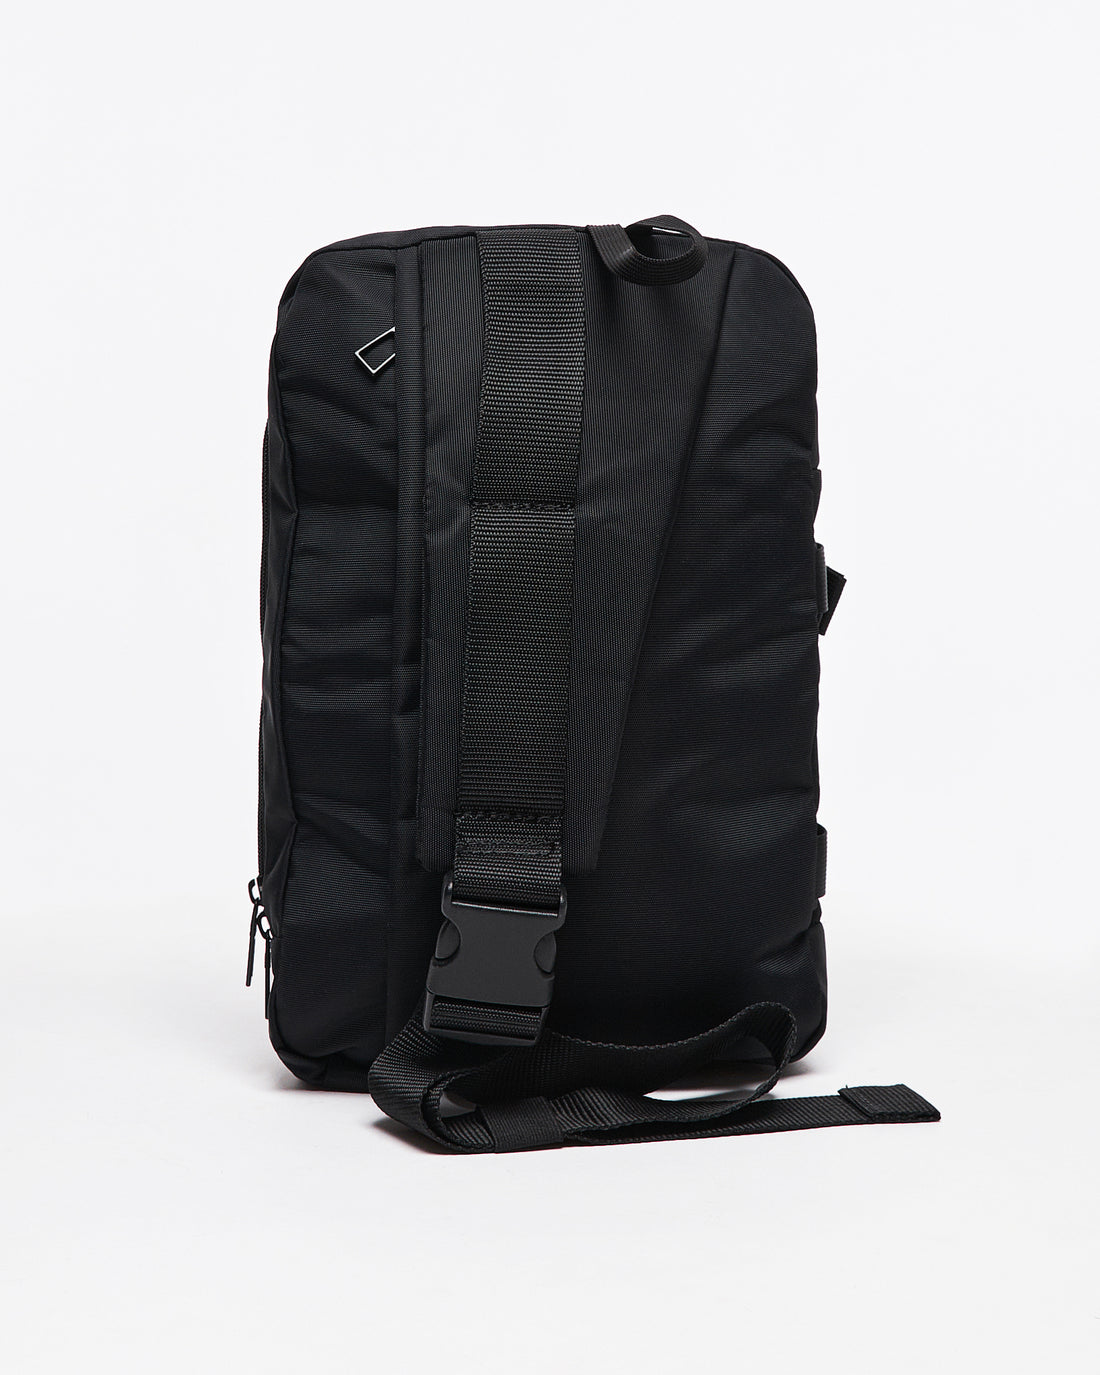 ADI One Shoulder Strap Unisex Backpack 16.90